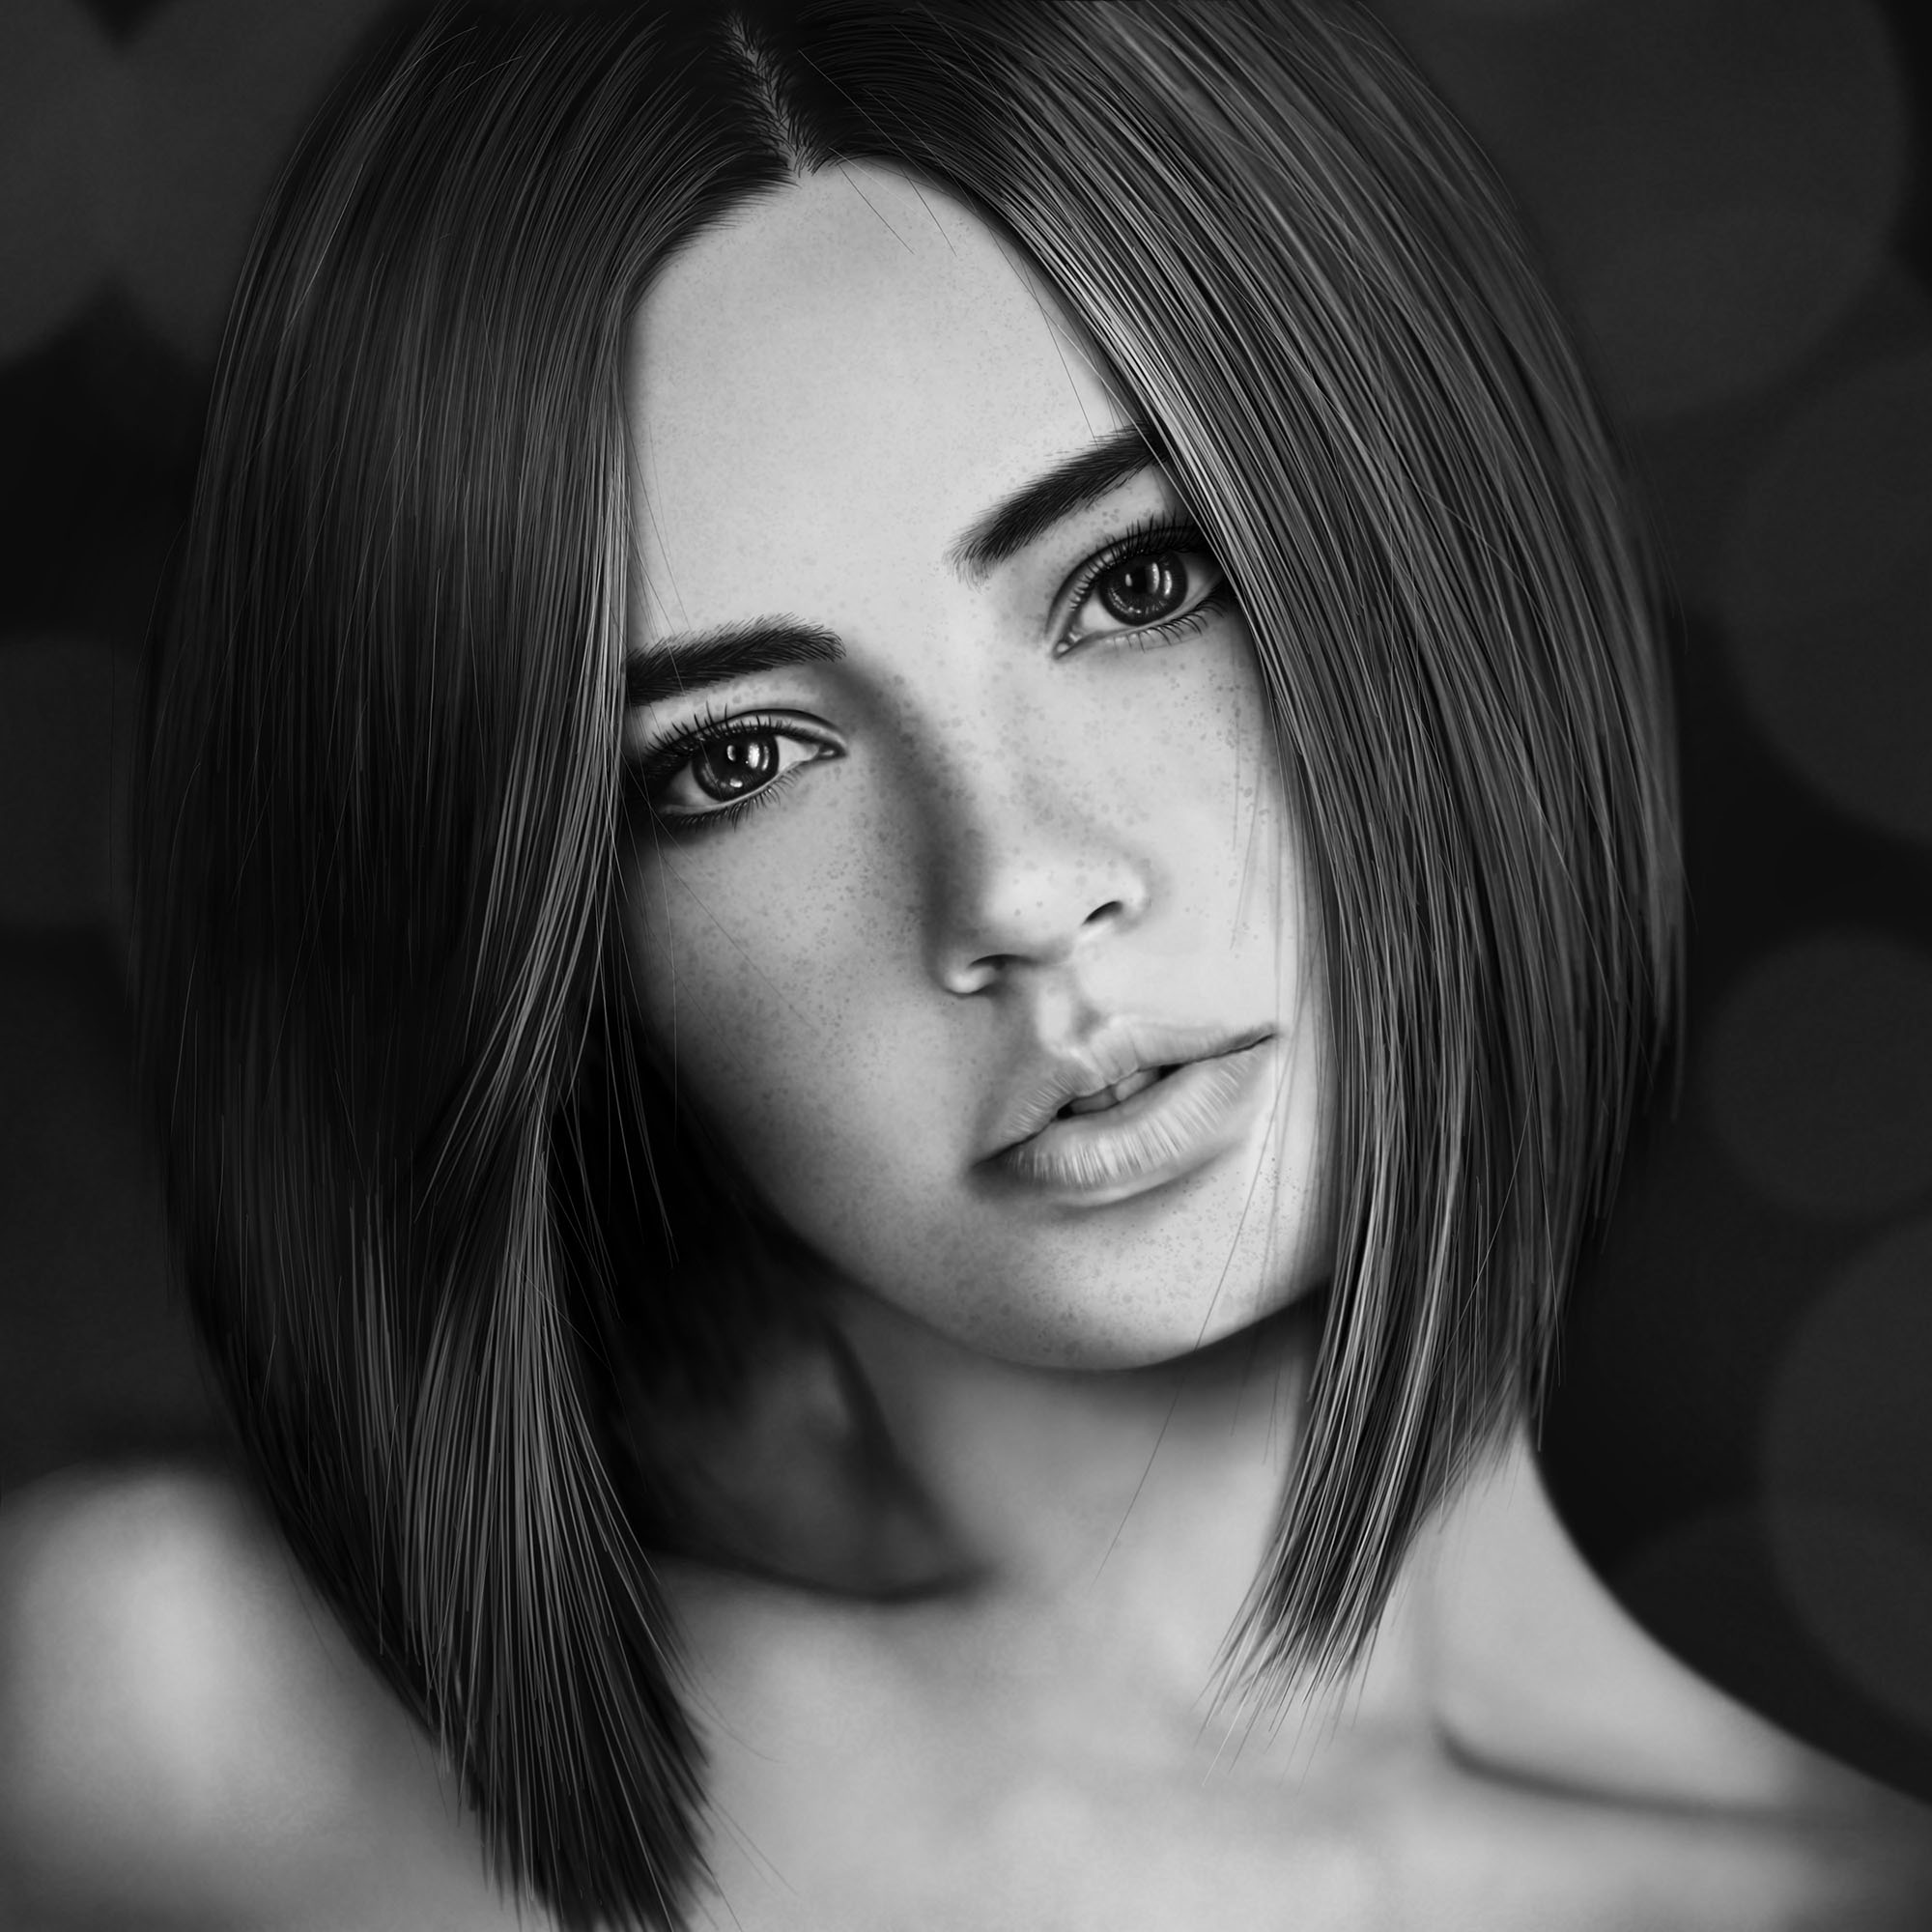 Woman Portrait drawing by JoeDieBestie on DeviantArt